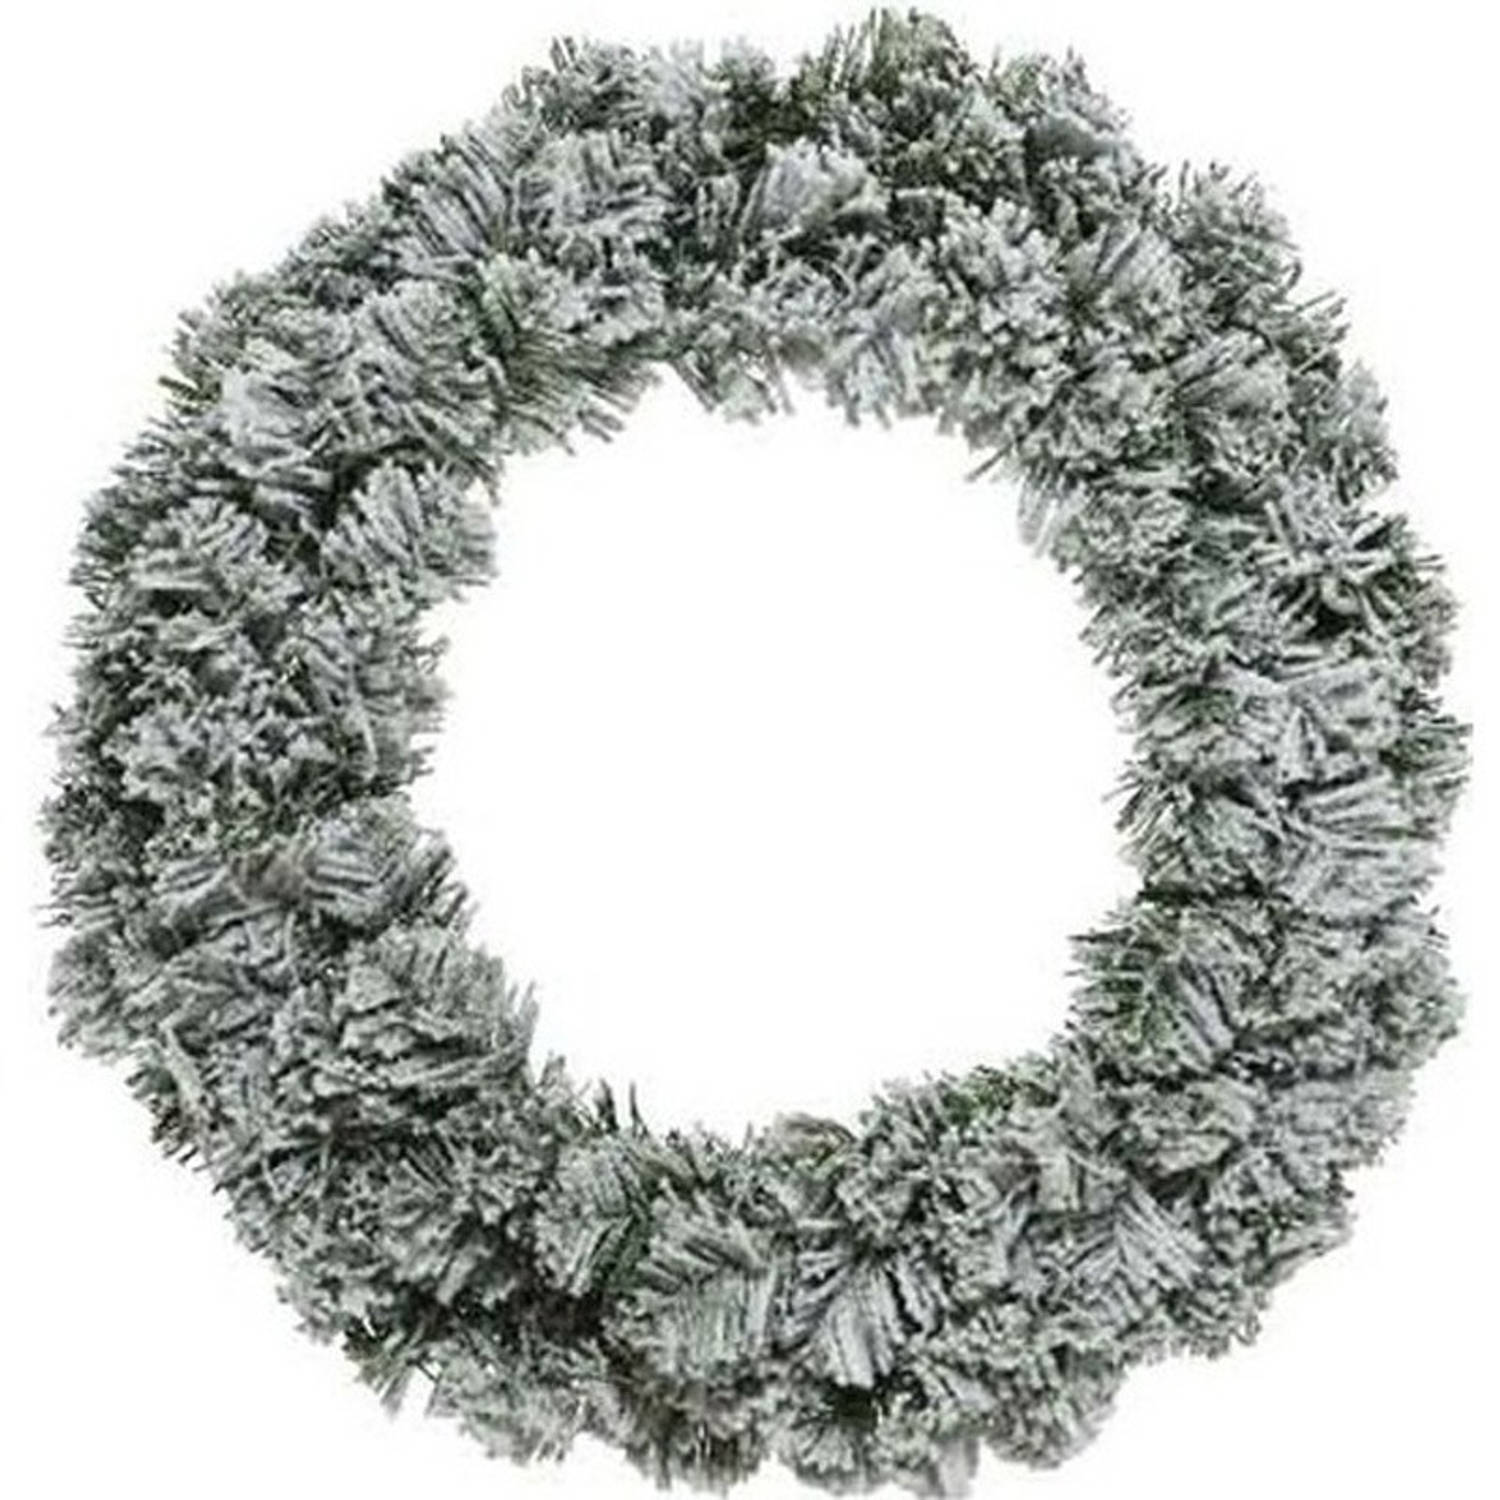 Kerst krans groen met sneeuw 40 cm dennenkransen versiering/decoratie - Kerstkransen